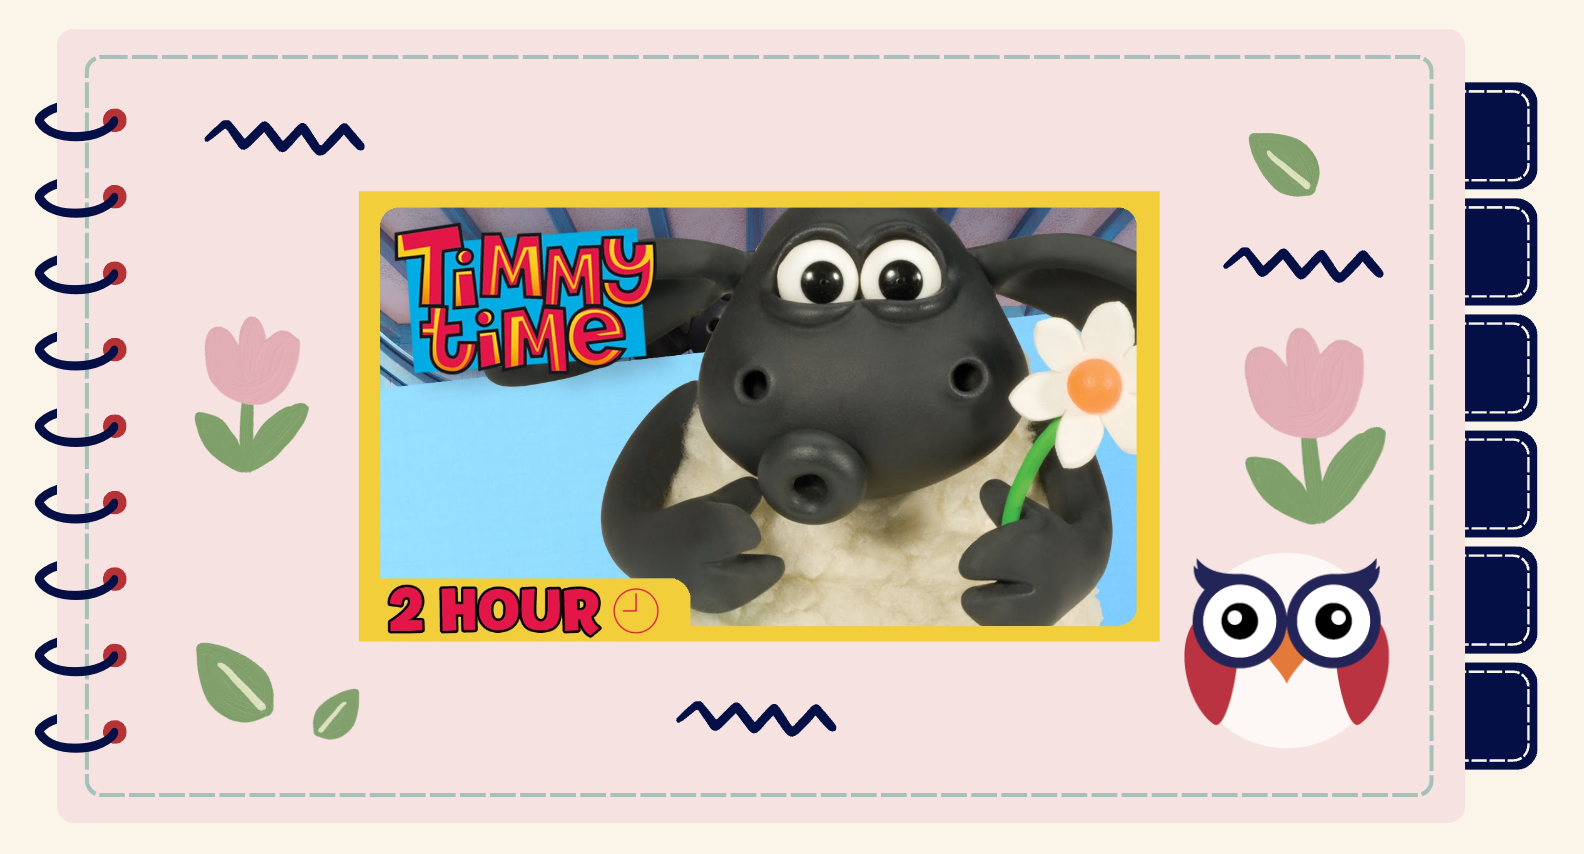 Timmy Time giúp bé học tiếng Anh và xây dựng những giá trị sống tích cực cho trẻ.